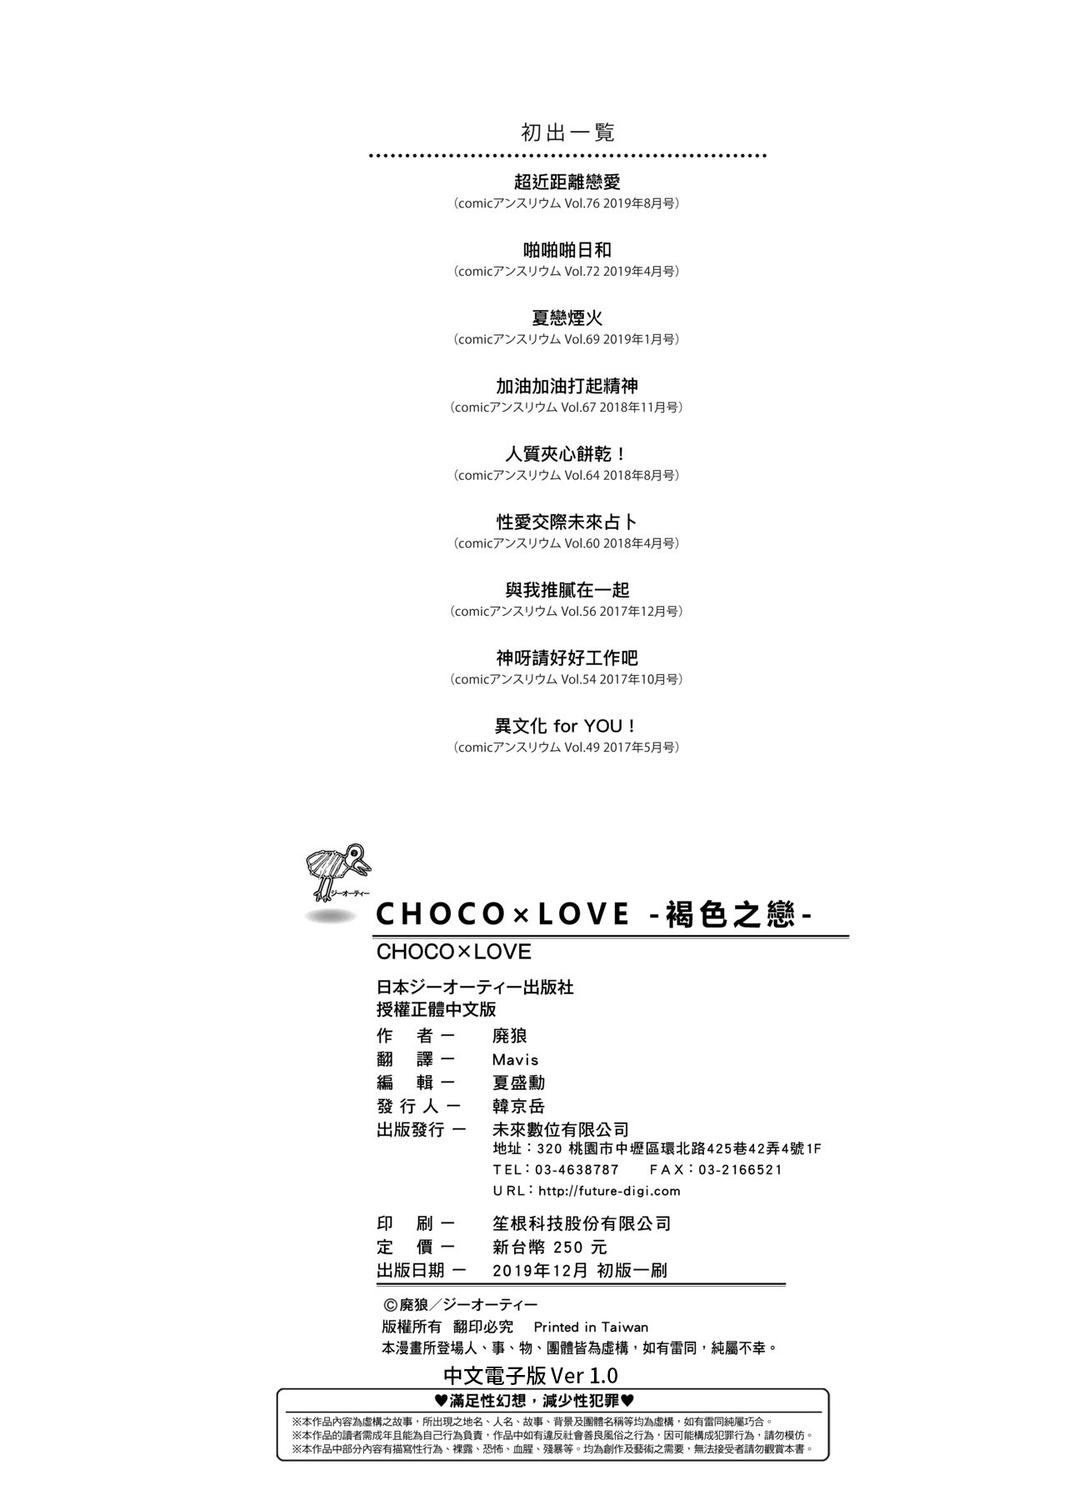 CHOCO x LOVE | CHOCO x LOVE 205